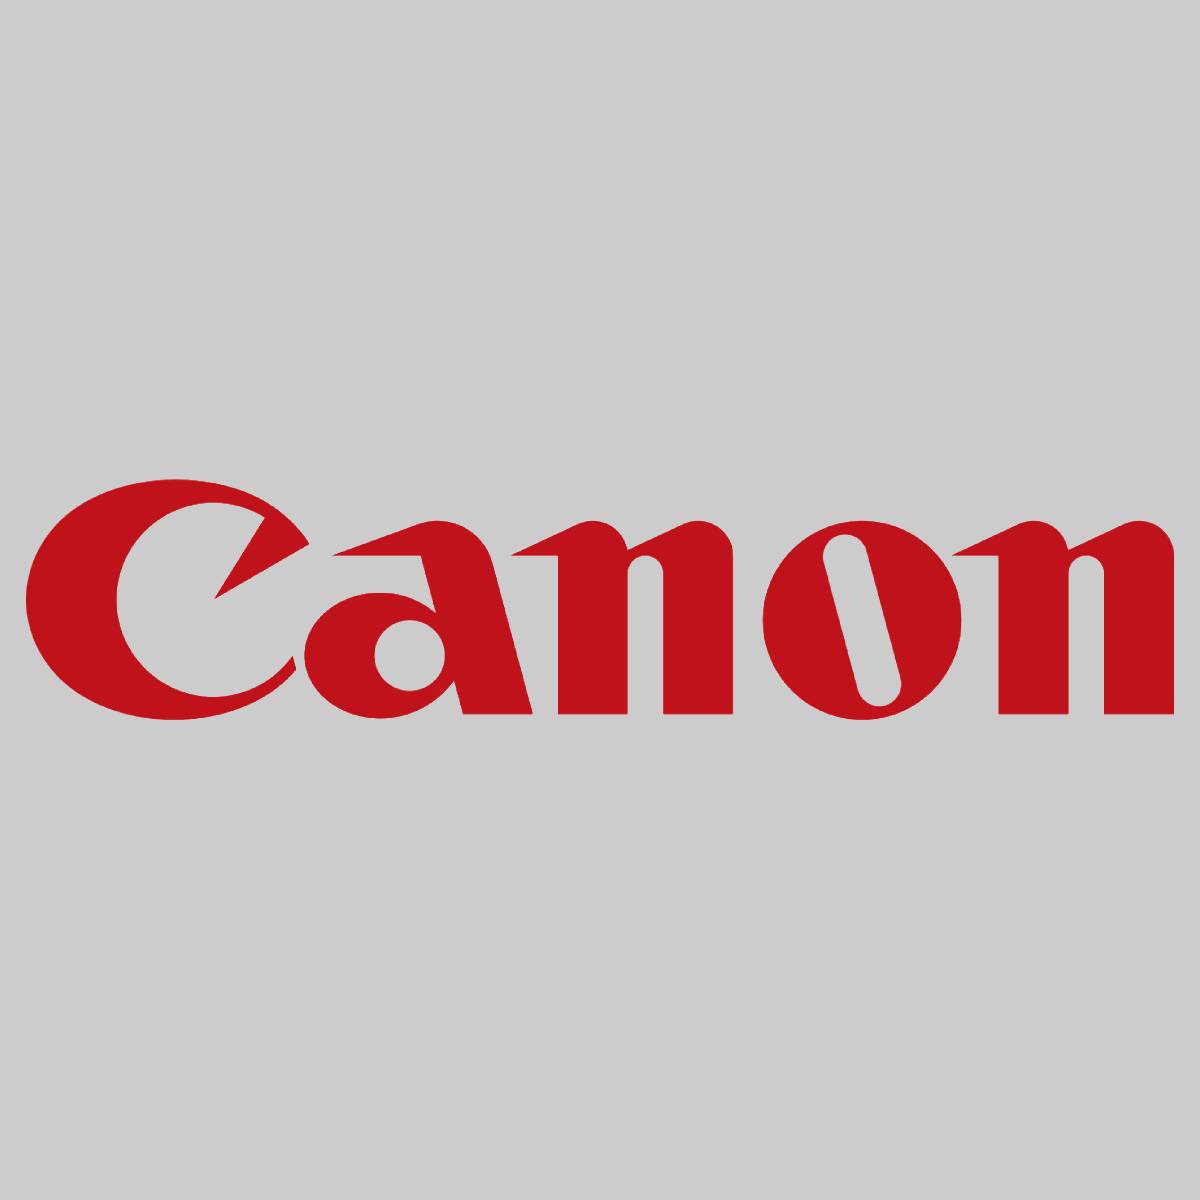 "Original Canon C-EXV34 Drum Unit Black 3786B003 imageRunner C 2100 IR-C 2100 S